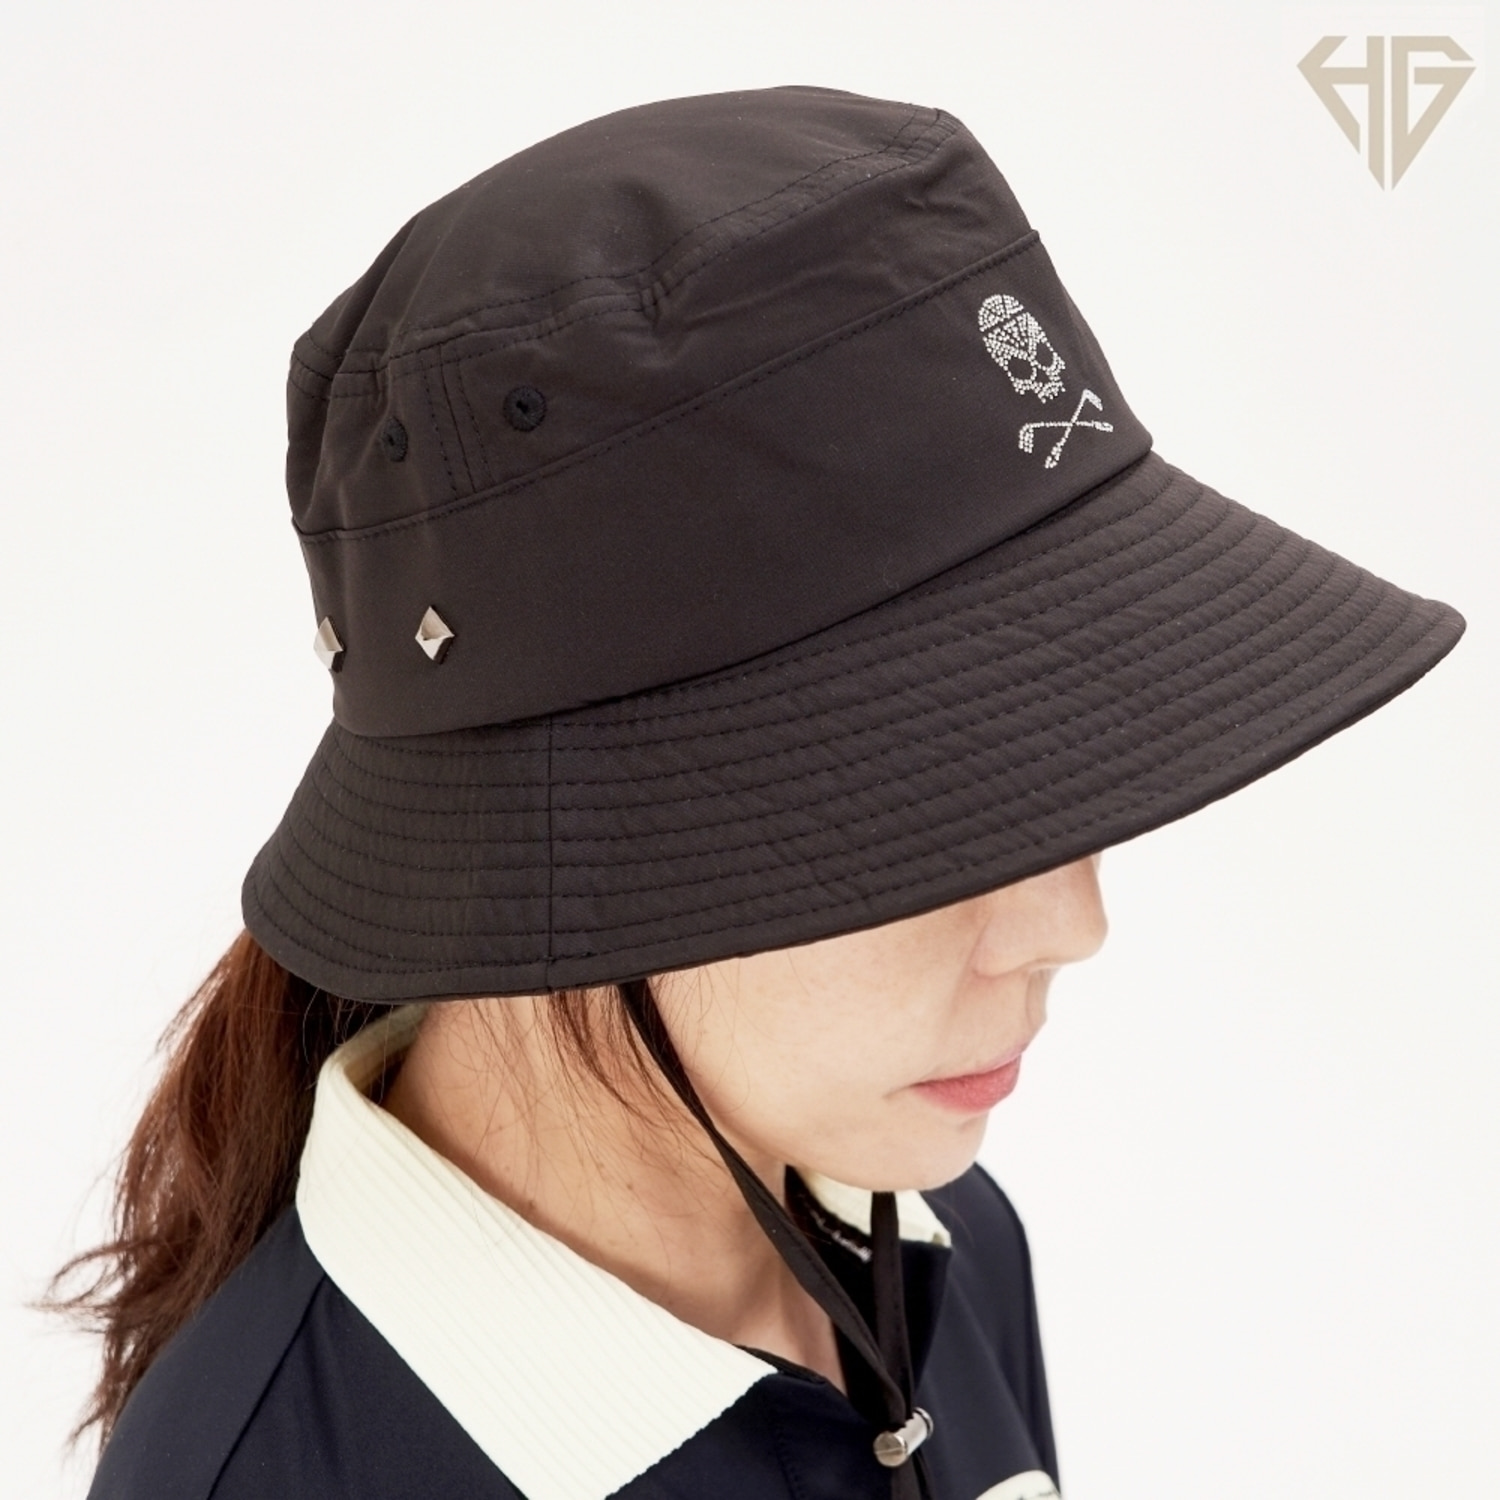 [HIP] 힙스타 여성 골프 벙거지 버킷햇 모자 보석 스컬 넓은챙 UV차단 방수 캡 HIP105